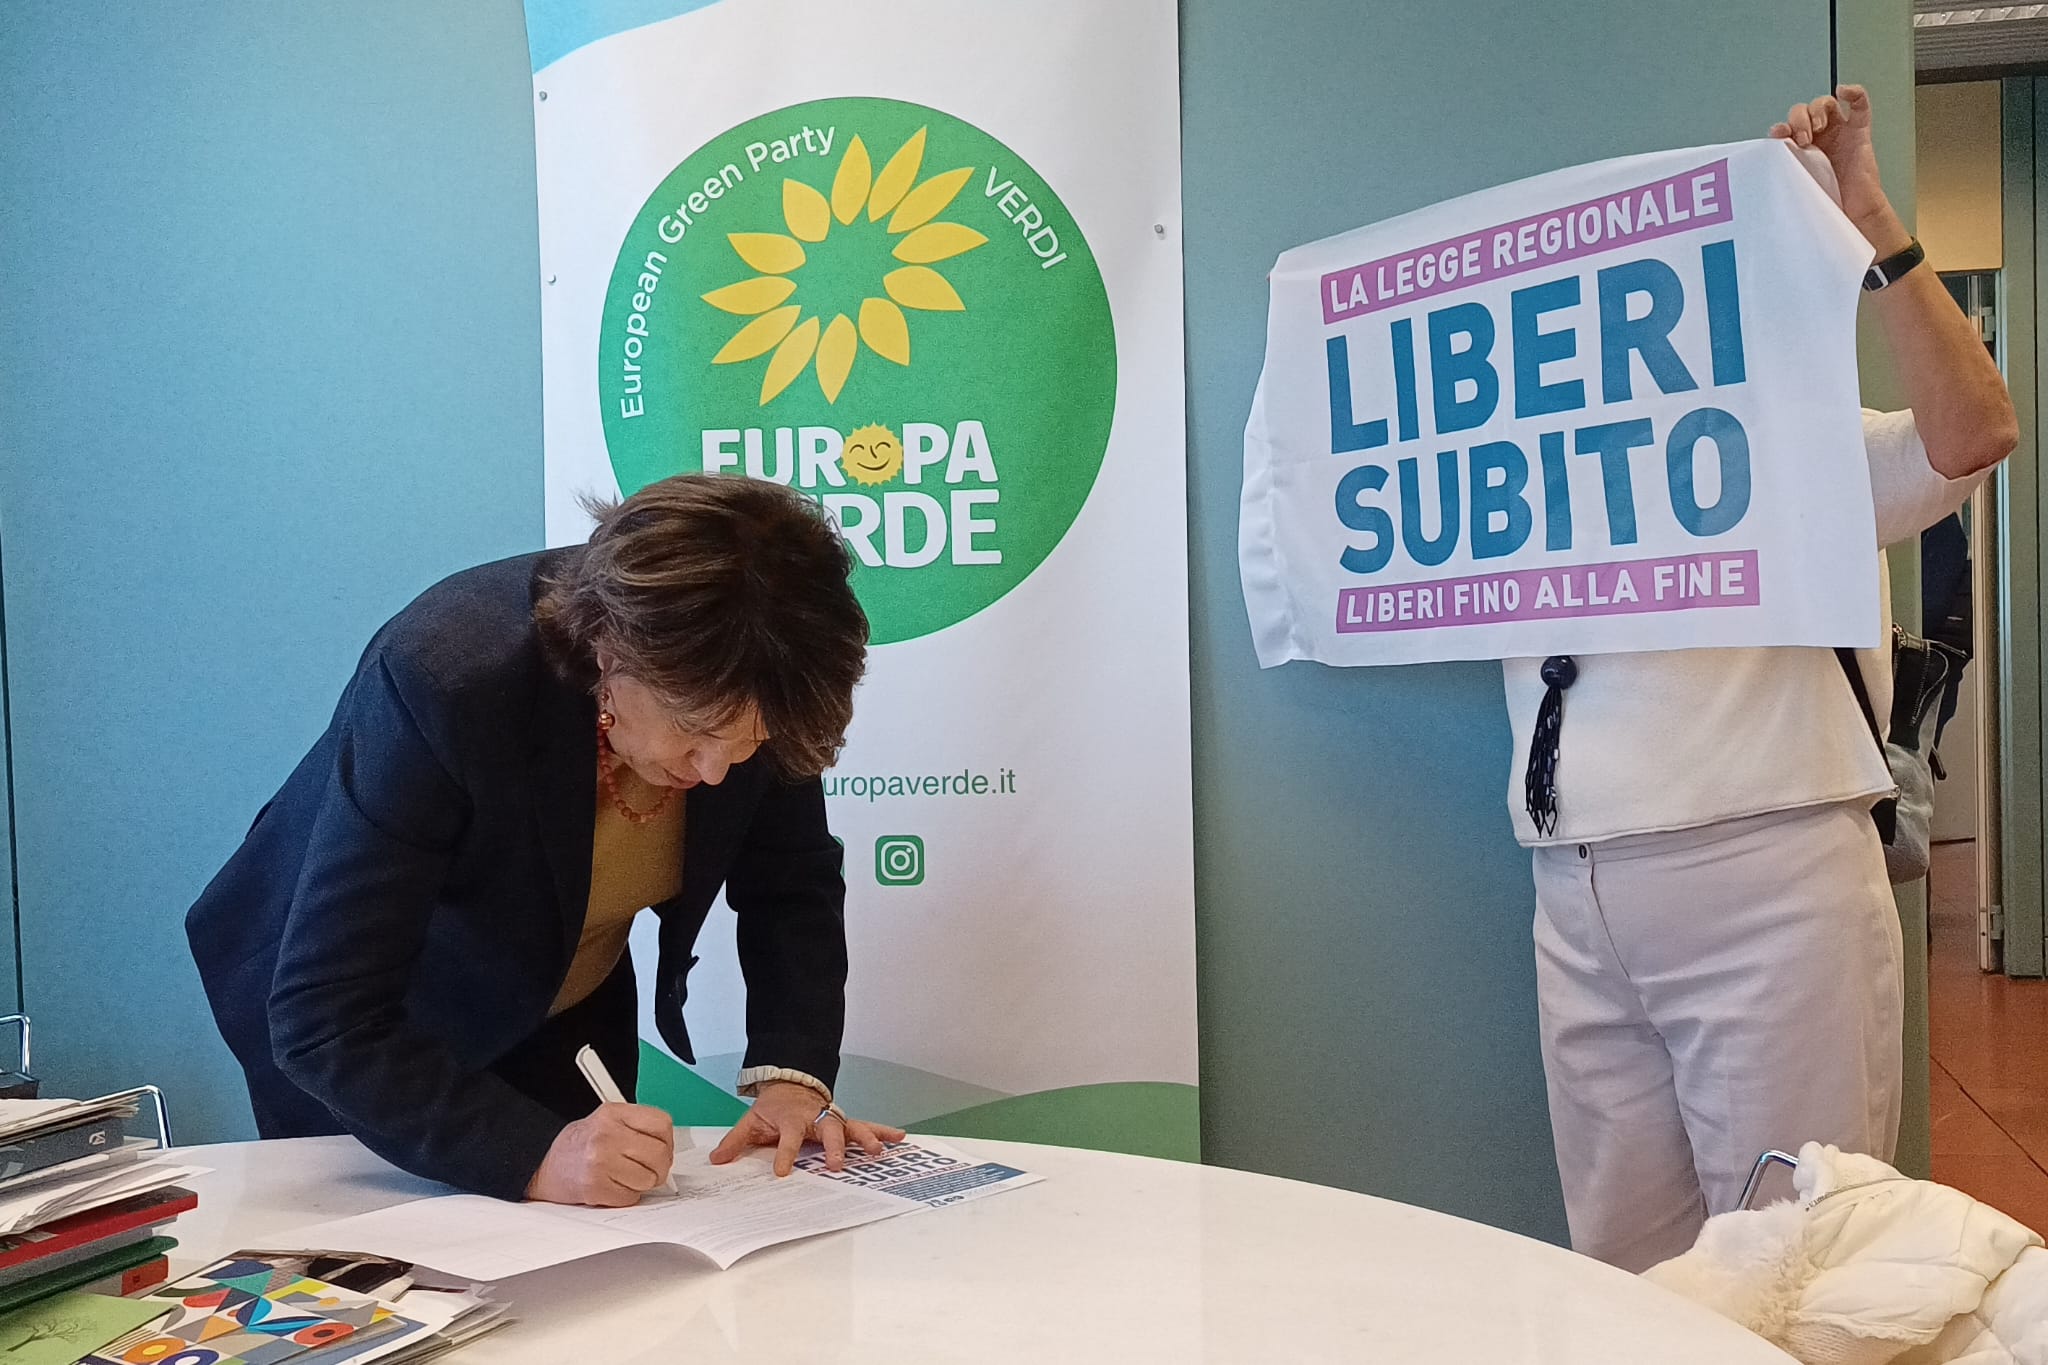 Al momento stai visualizzando La campagna Liberi Fino Alla Fine per lanciare anche in Emilia-Romagna la raccolta firme a sostegno della presentazione della proposta di legge sul fine vita